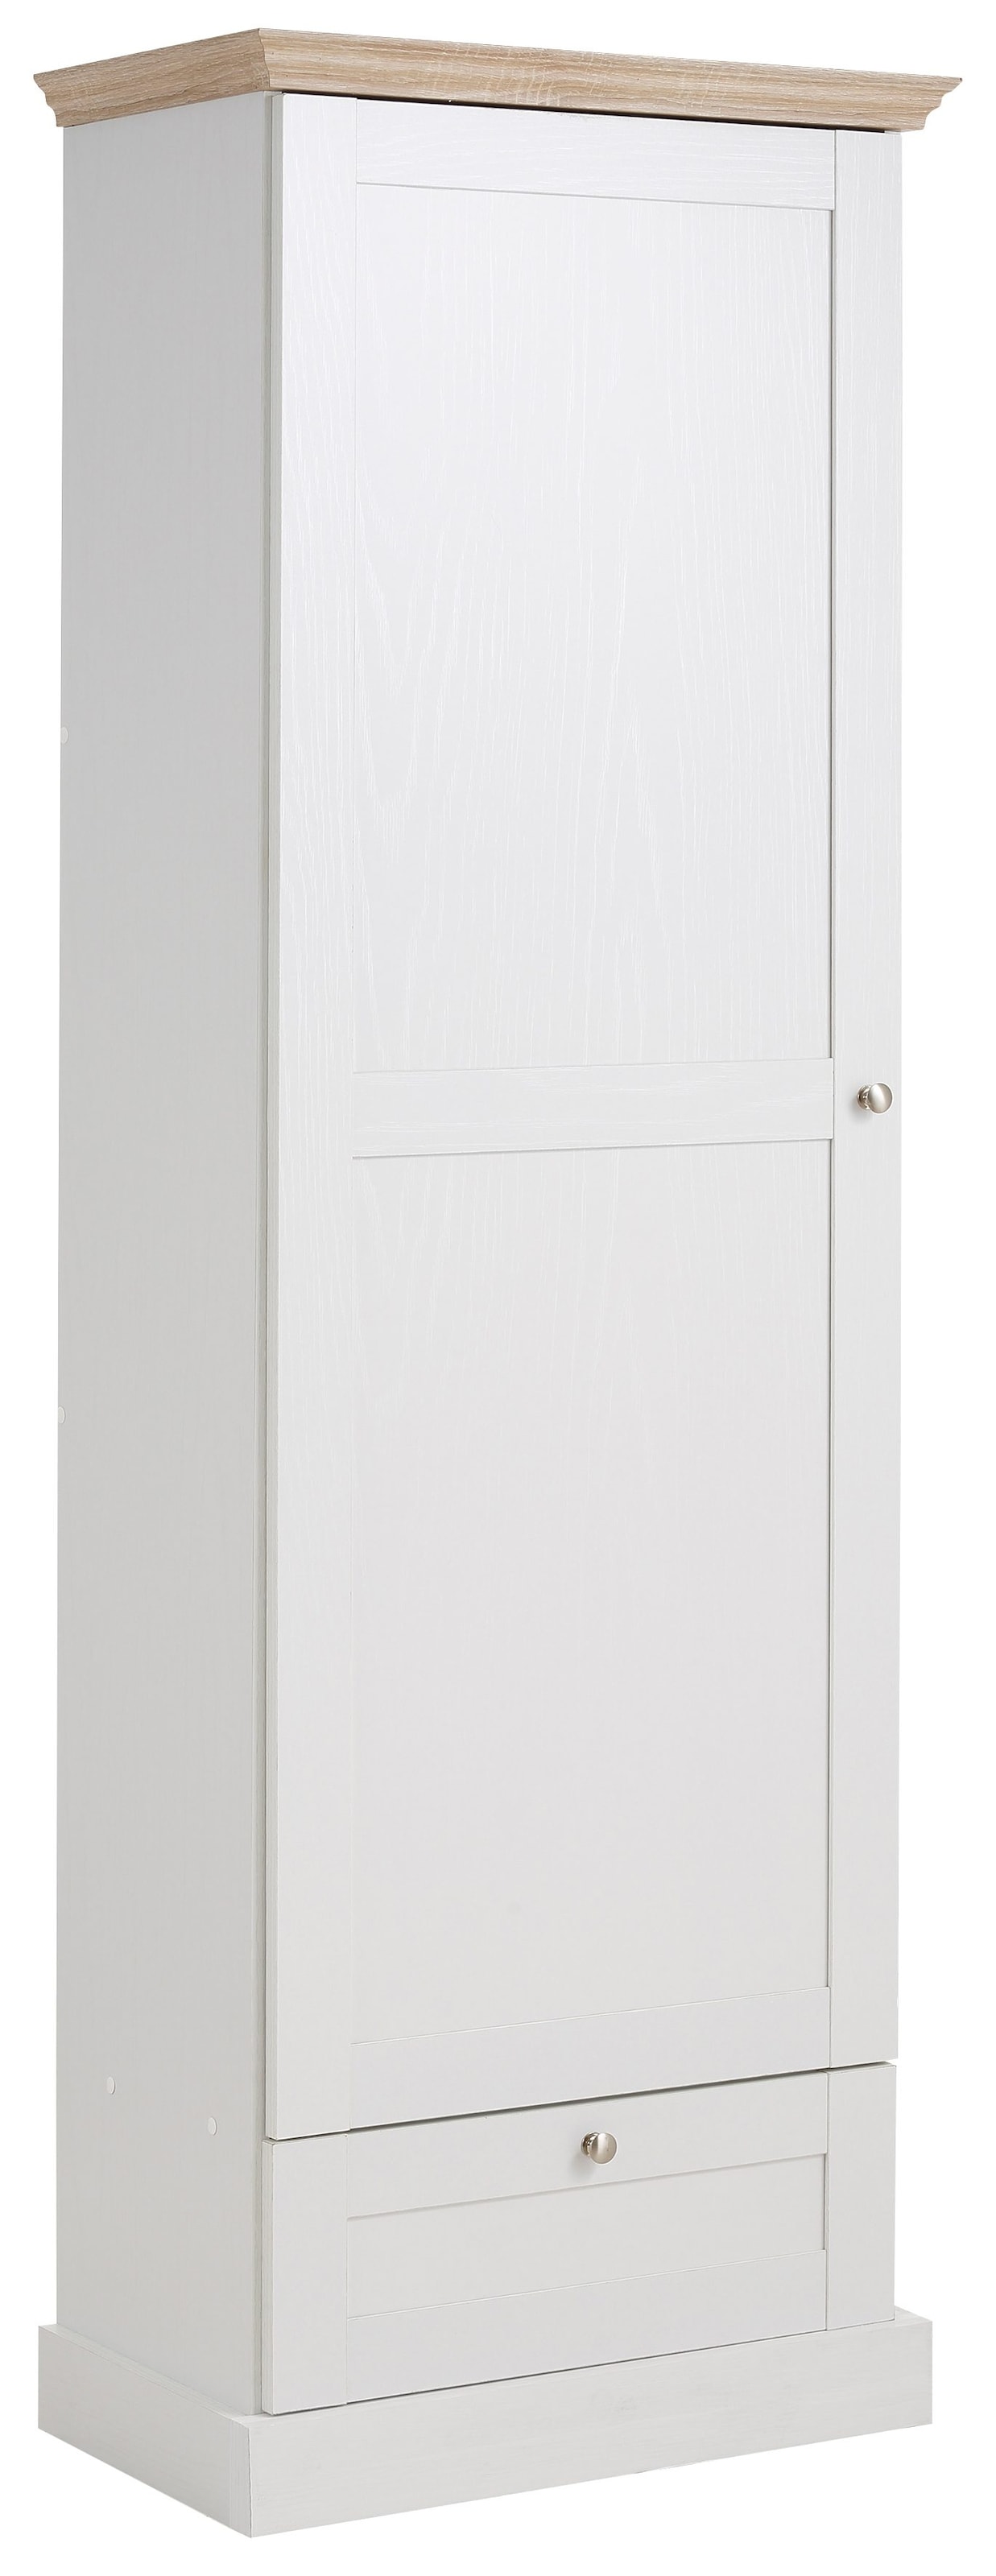 Home affaire Garderobenschrank »Binz«, mit einer schönen Holzoptik, mit vielen  Stauraummöglichkeiten, Höhe 180 cm auf Rechnung kaufen